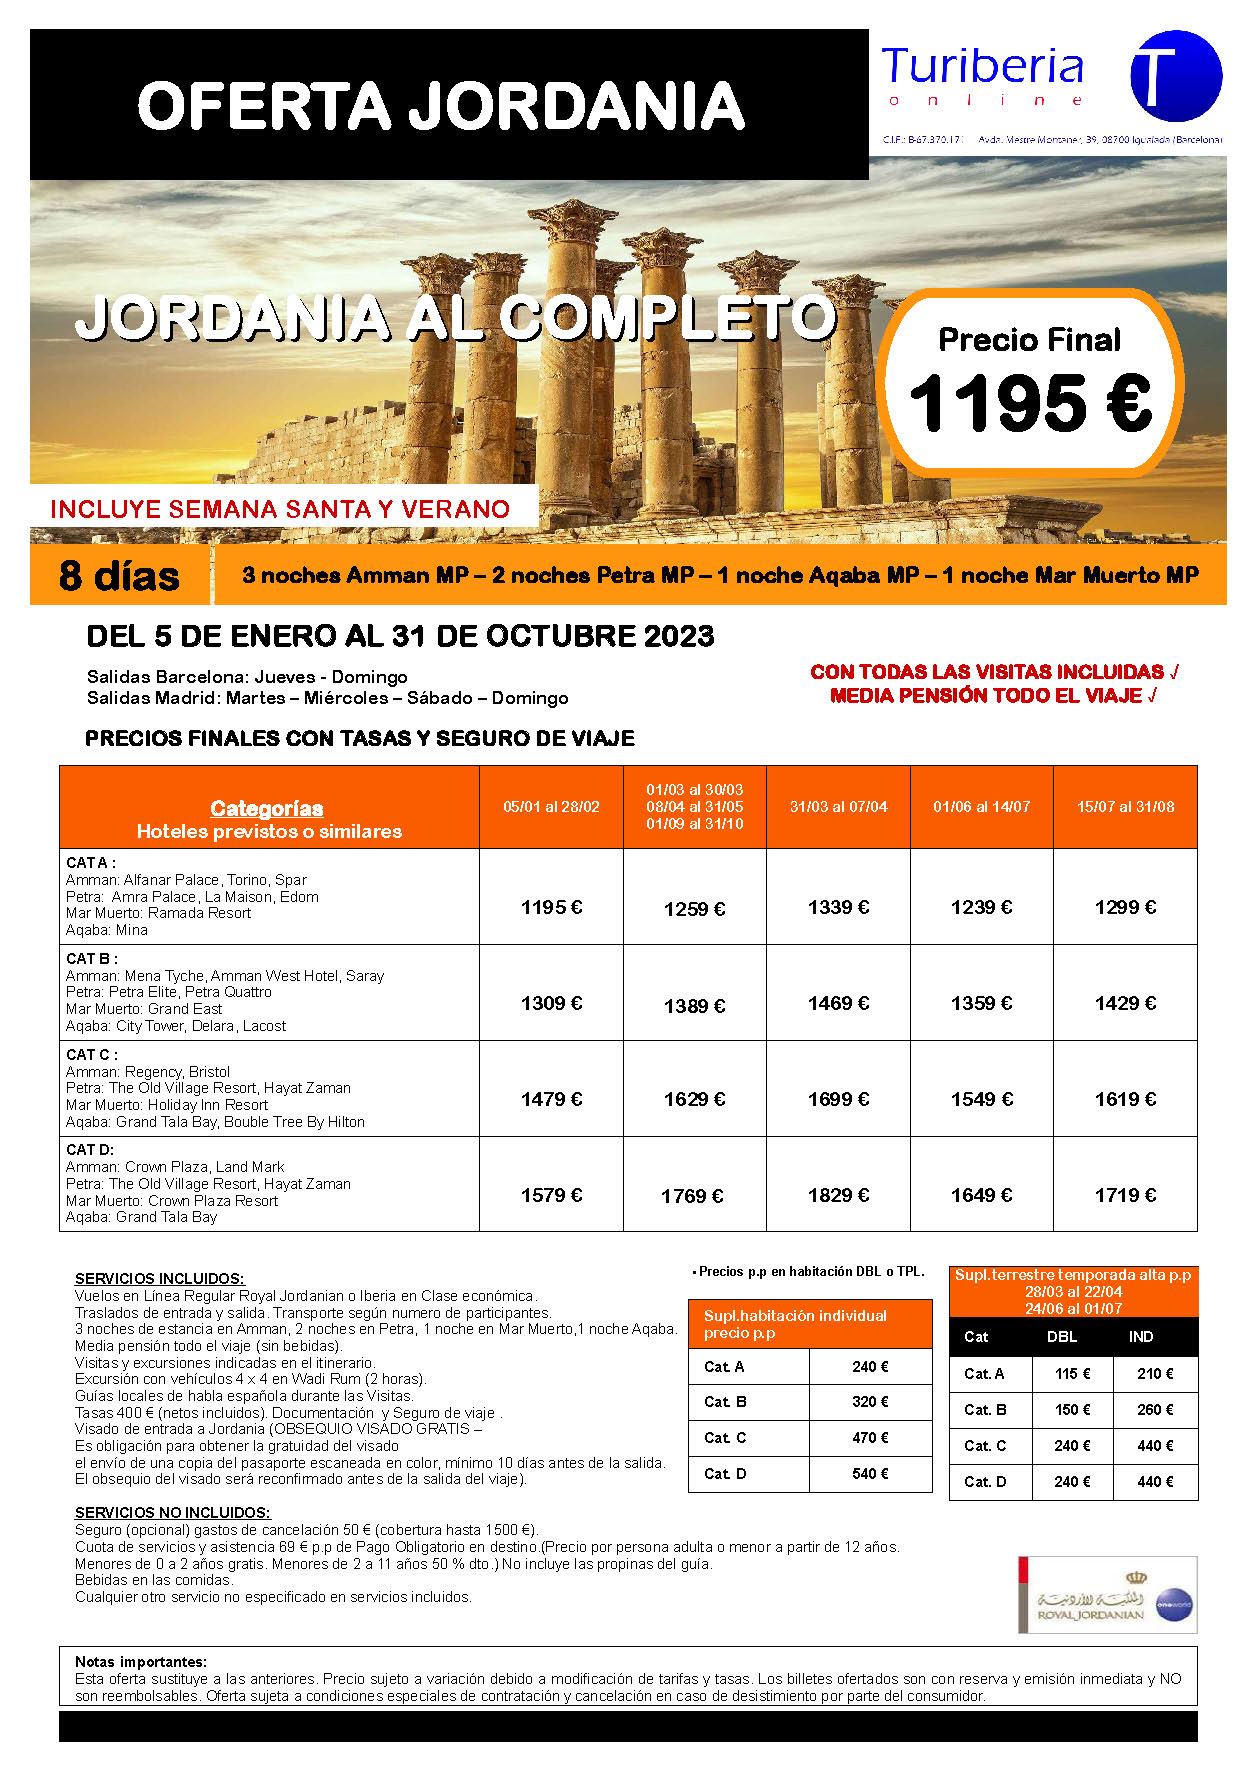 Ofertas Turiberia Jordania 2023 circuito Jordania al Completo 8 dias salida en vuelo directo desde Barcelona y Madrid